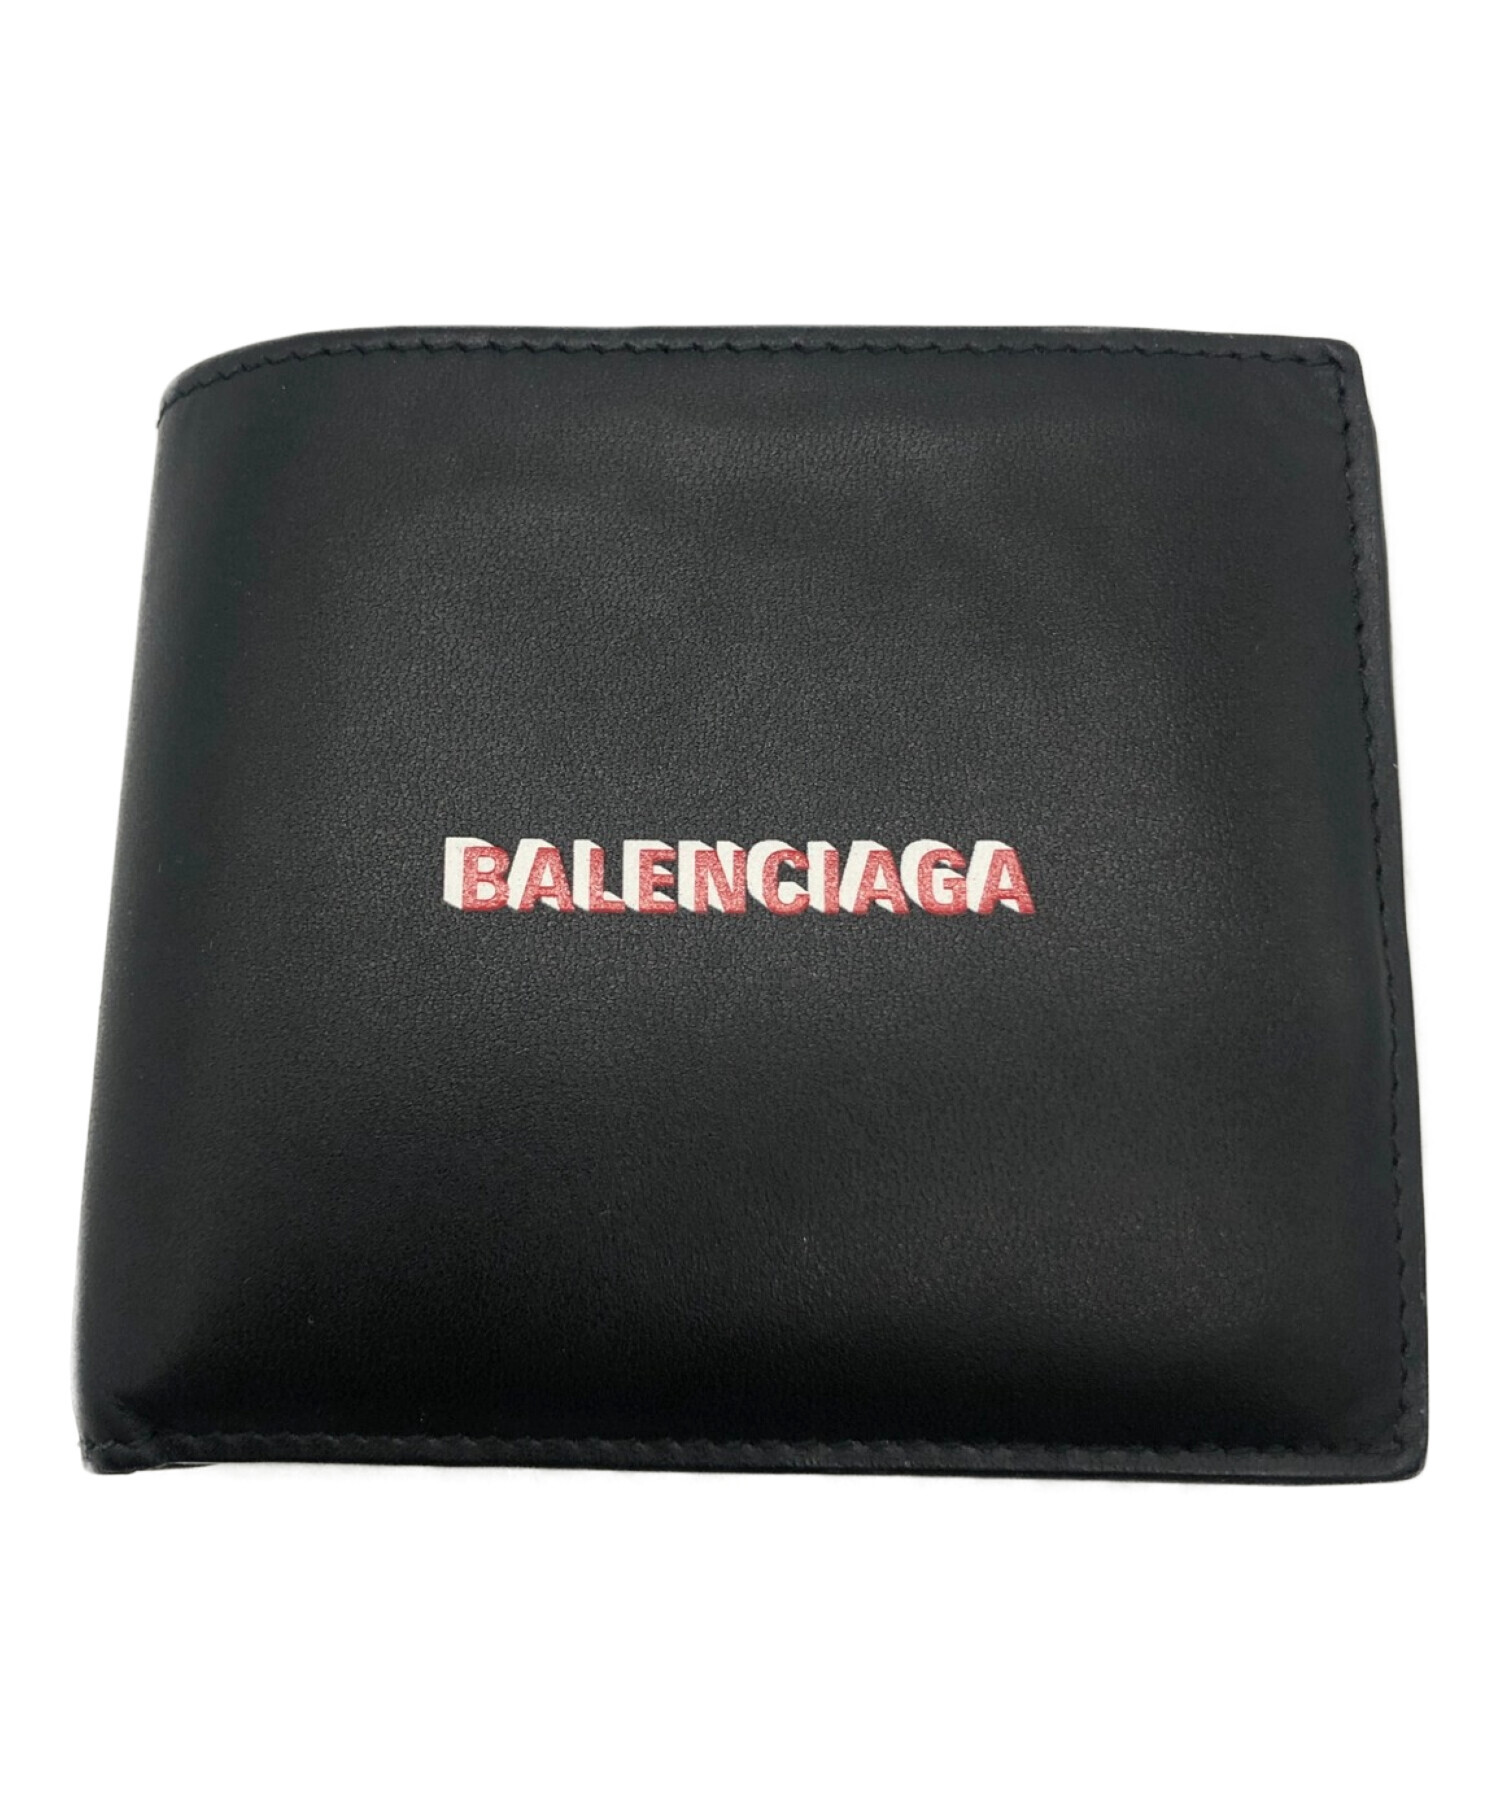 箱保存袋BALENCIAGA  バレンシアガ  二つ折り財布 ブラック